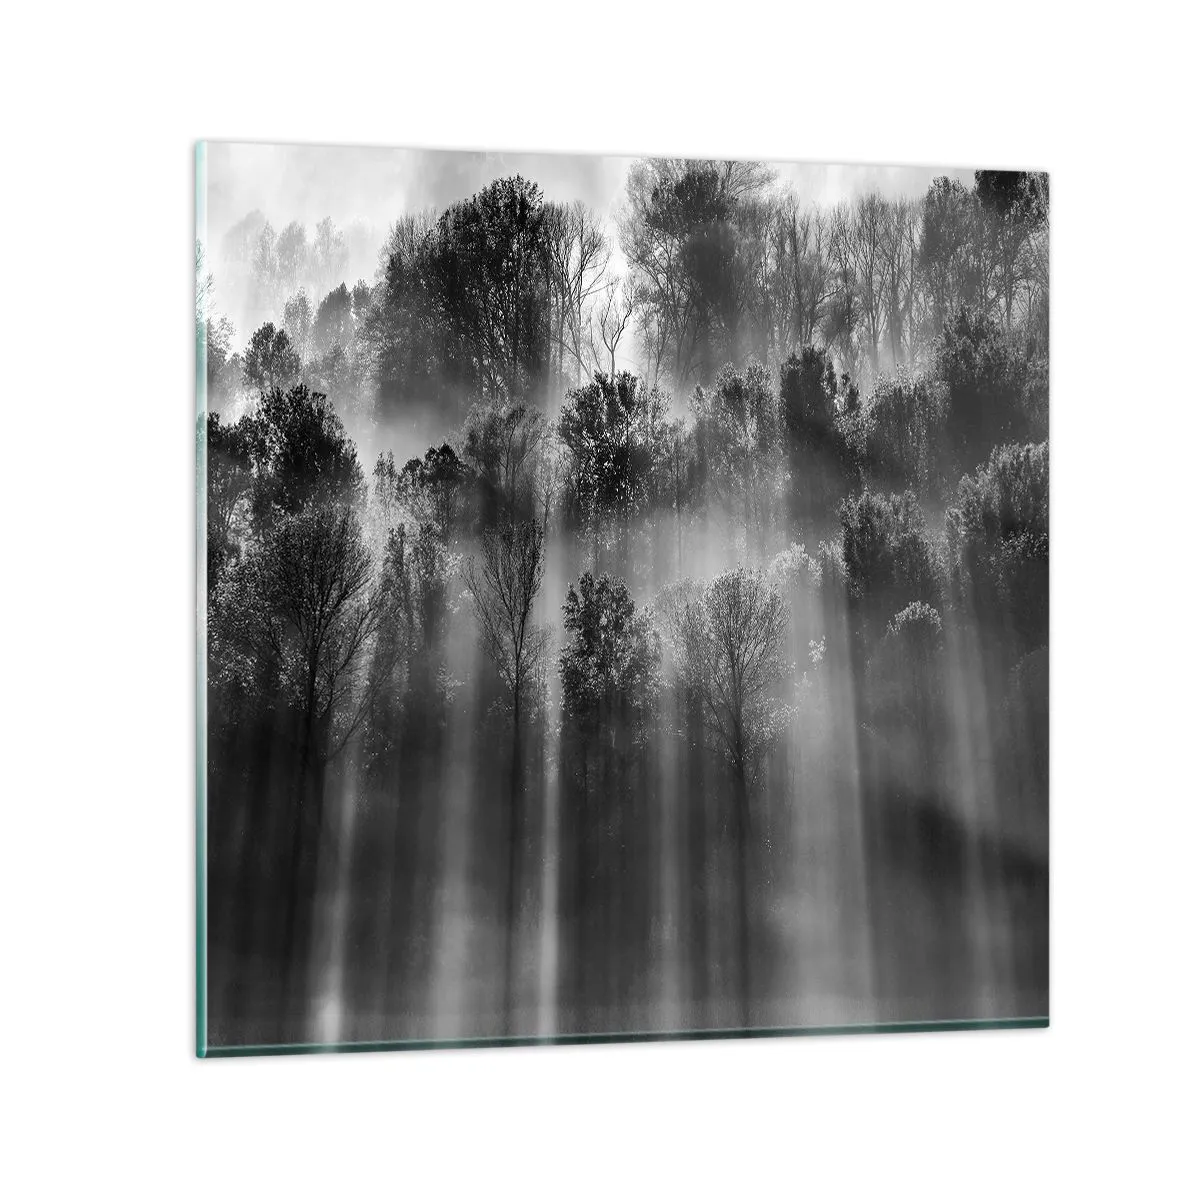 Obraz na szkle - W strumieniach światła - 70x70 cm